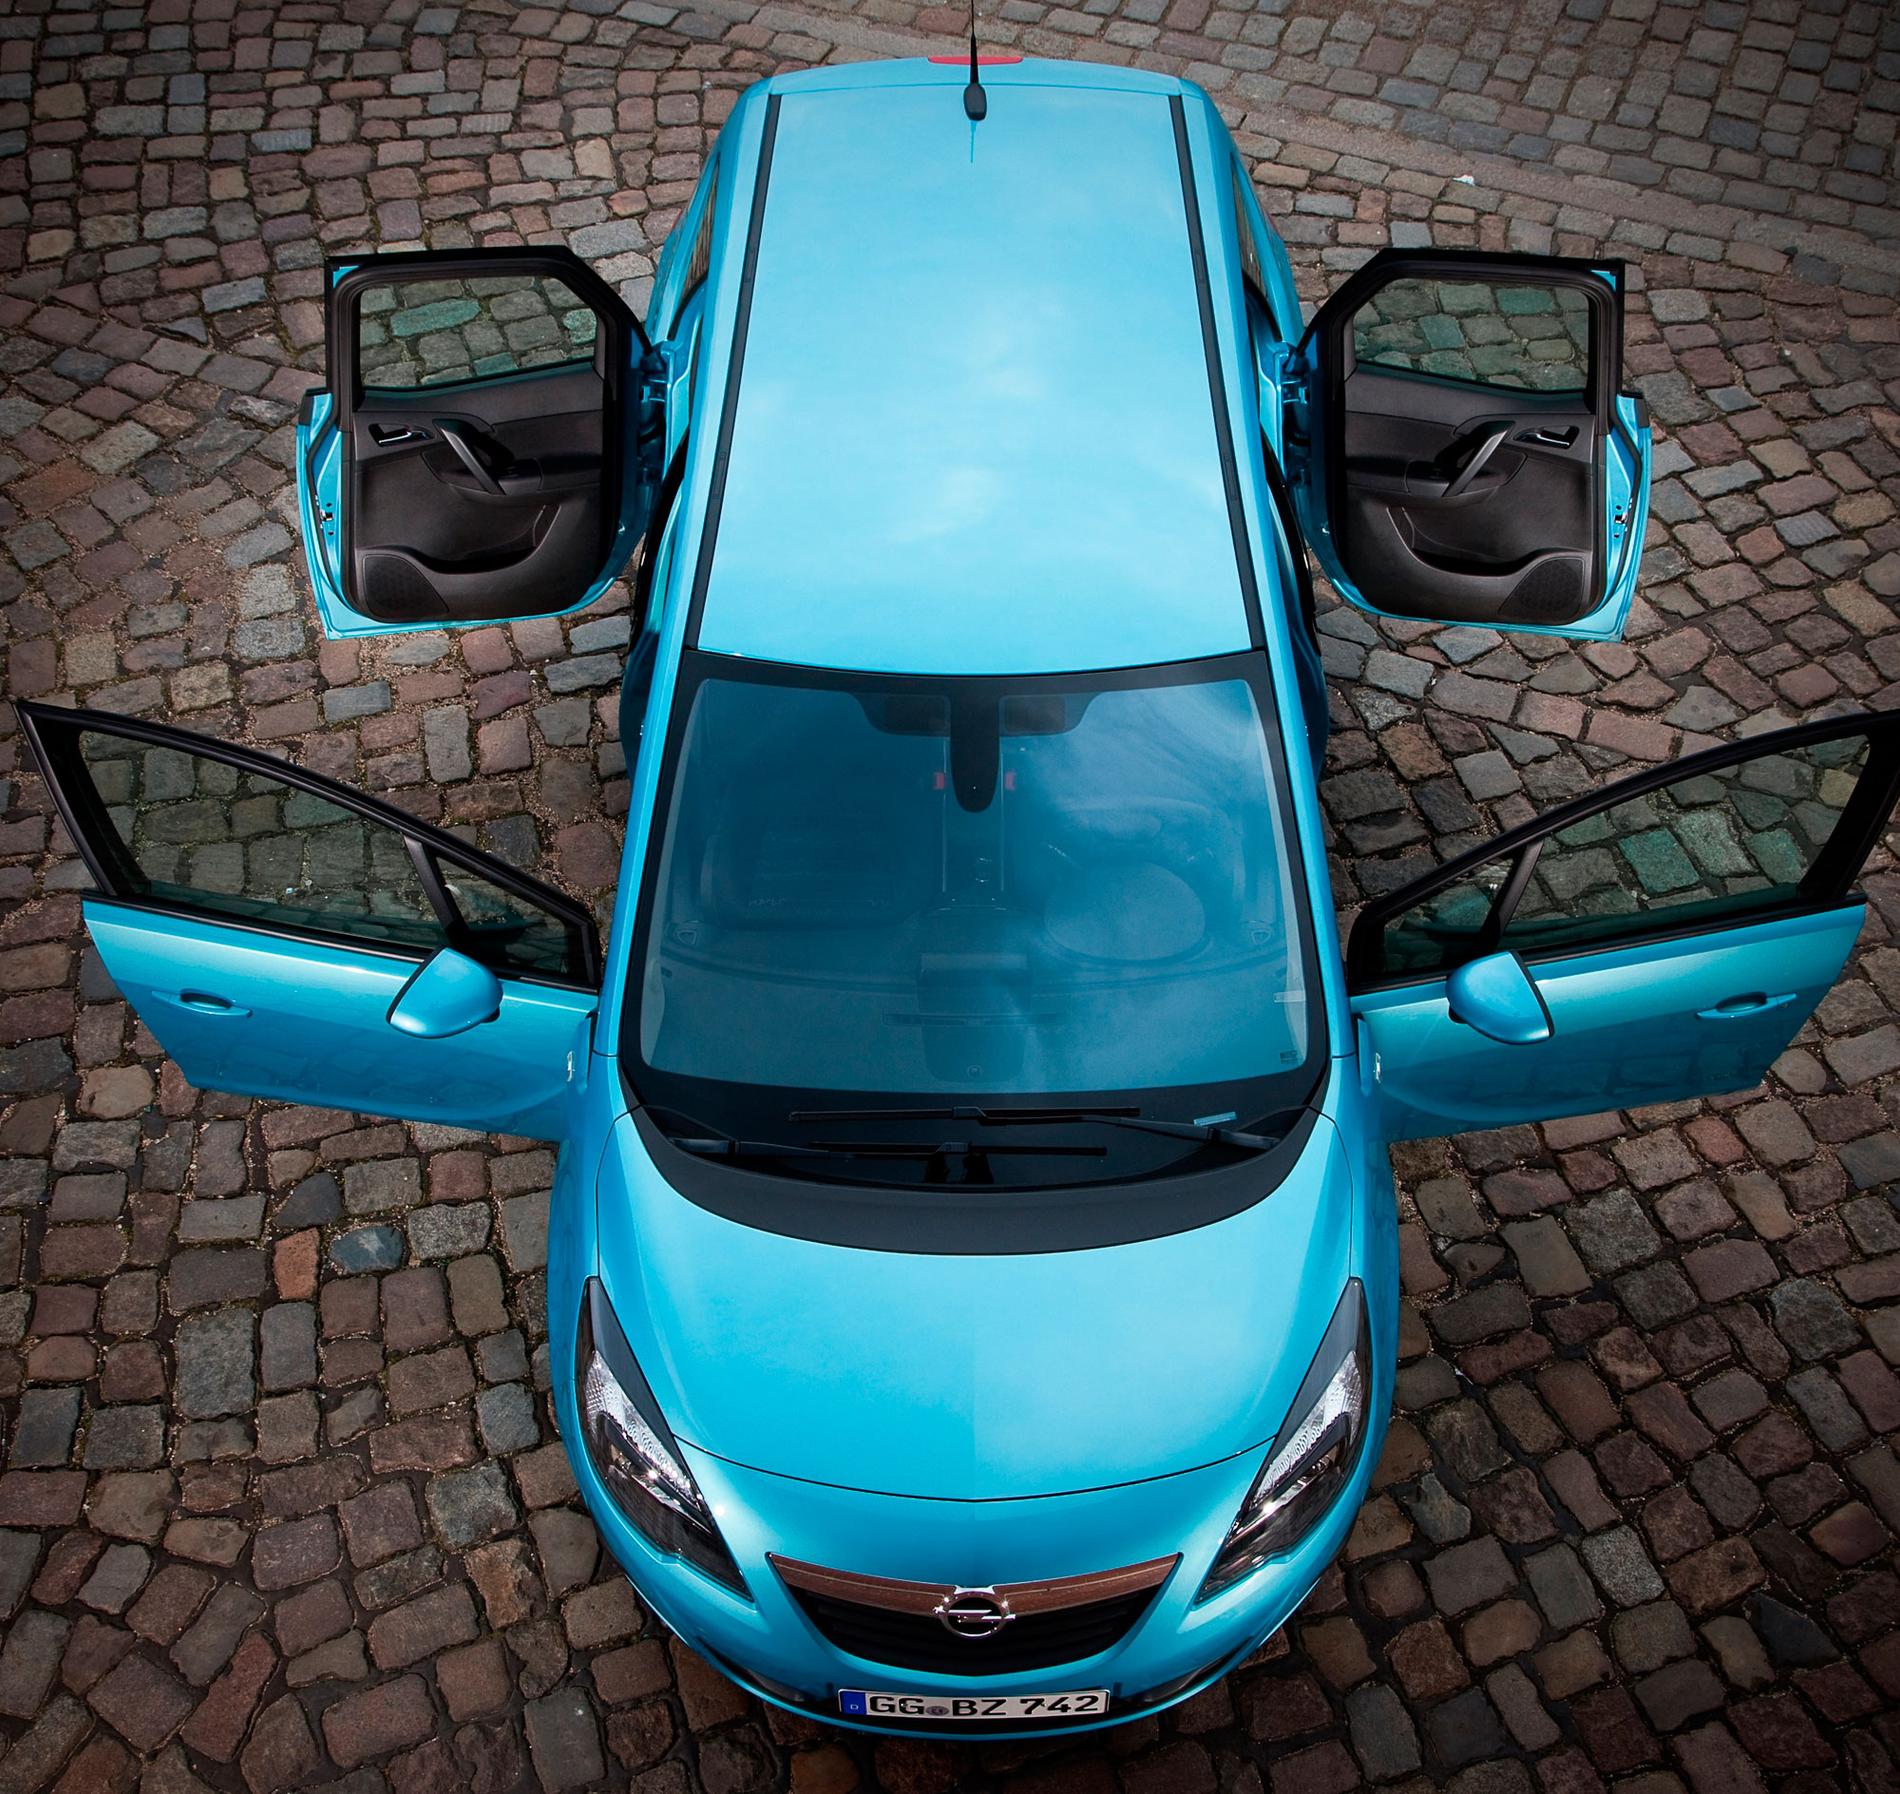 Nya Opel Meriva kommer kosta från 165 000 kronor och bilen har försäljningsstart i sommar.